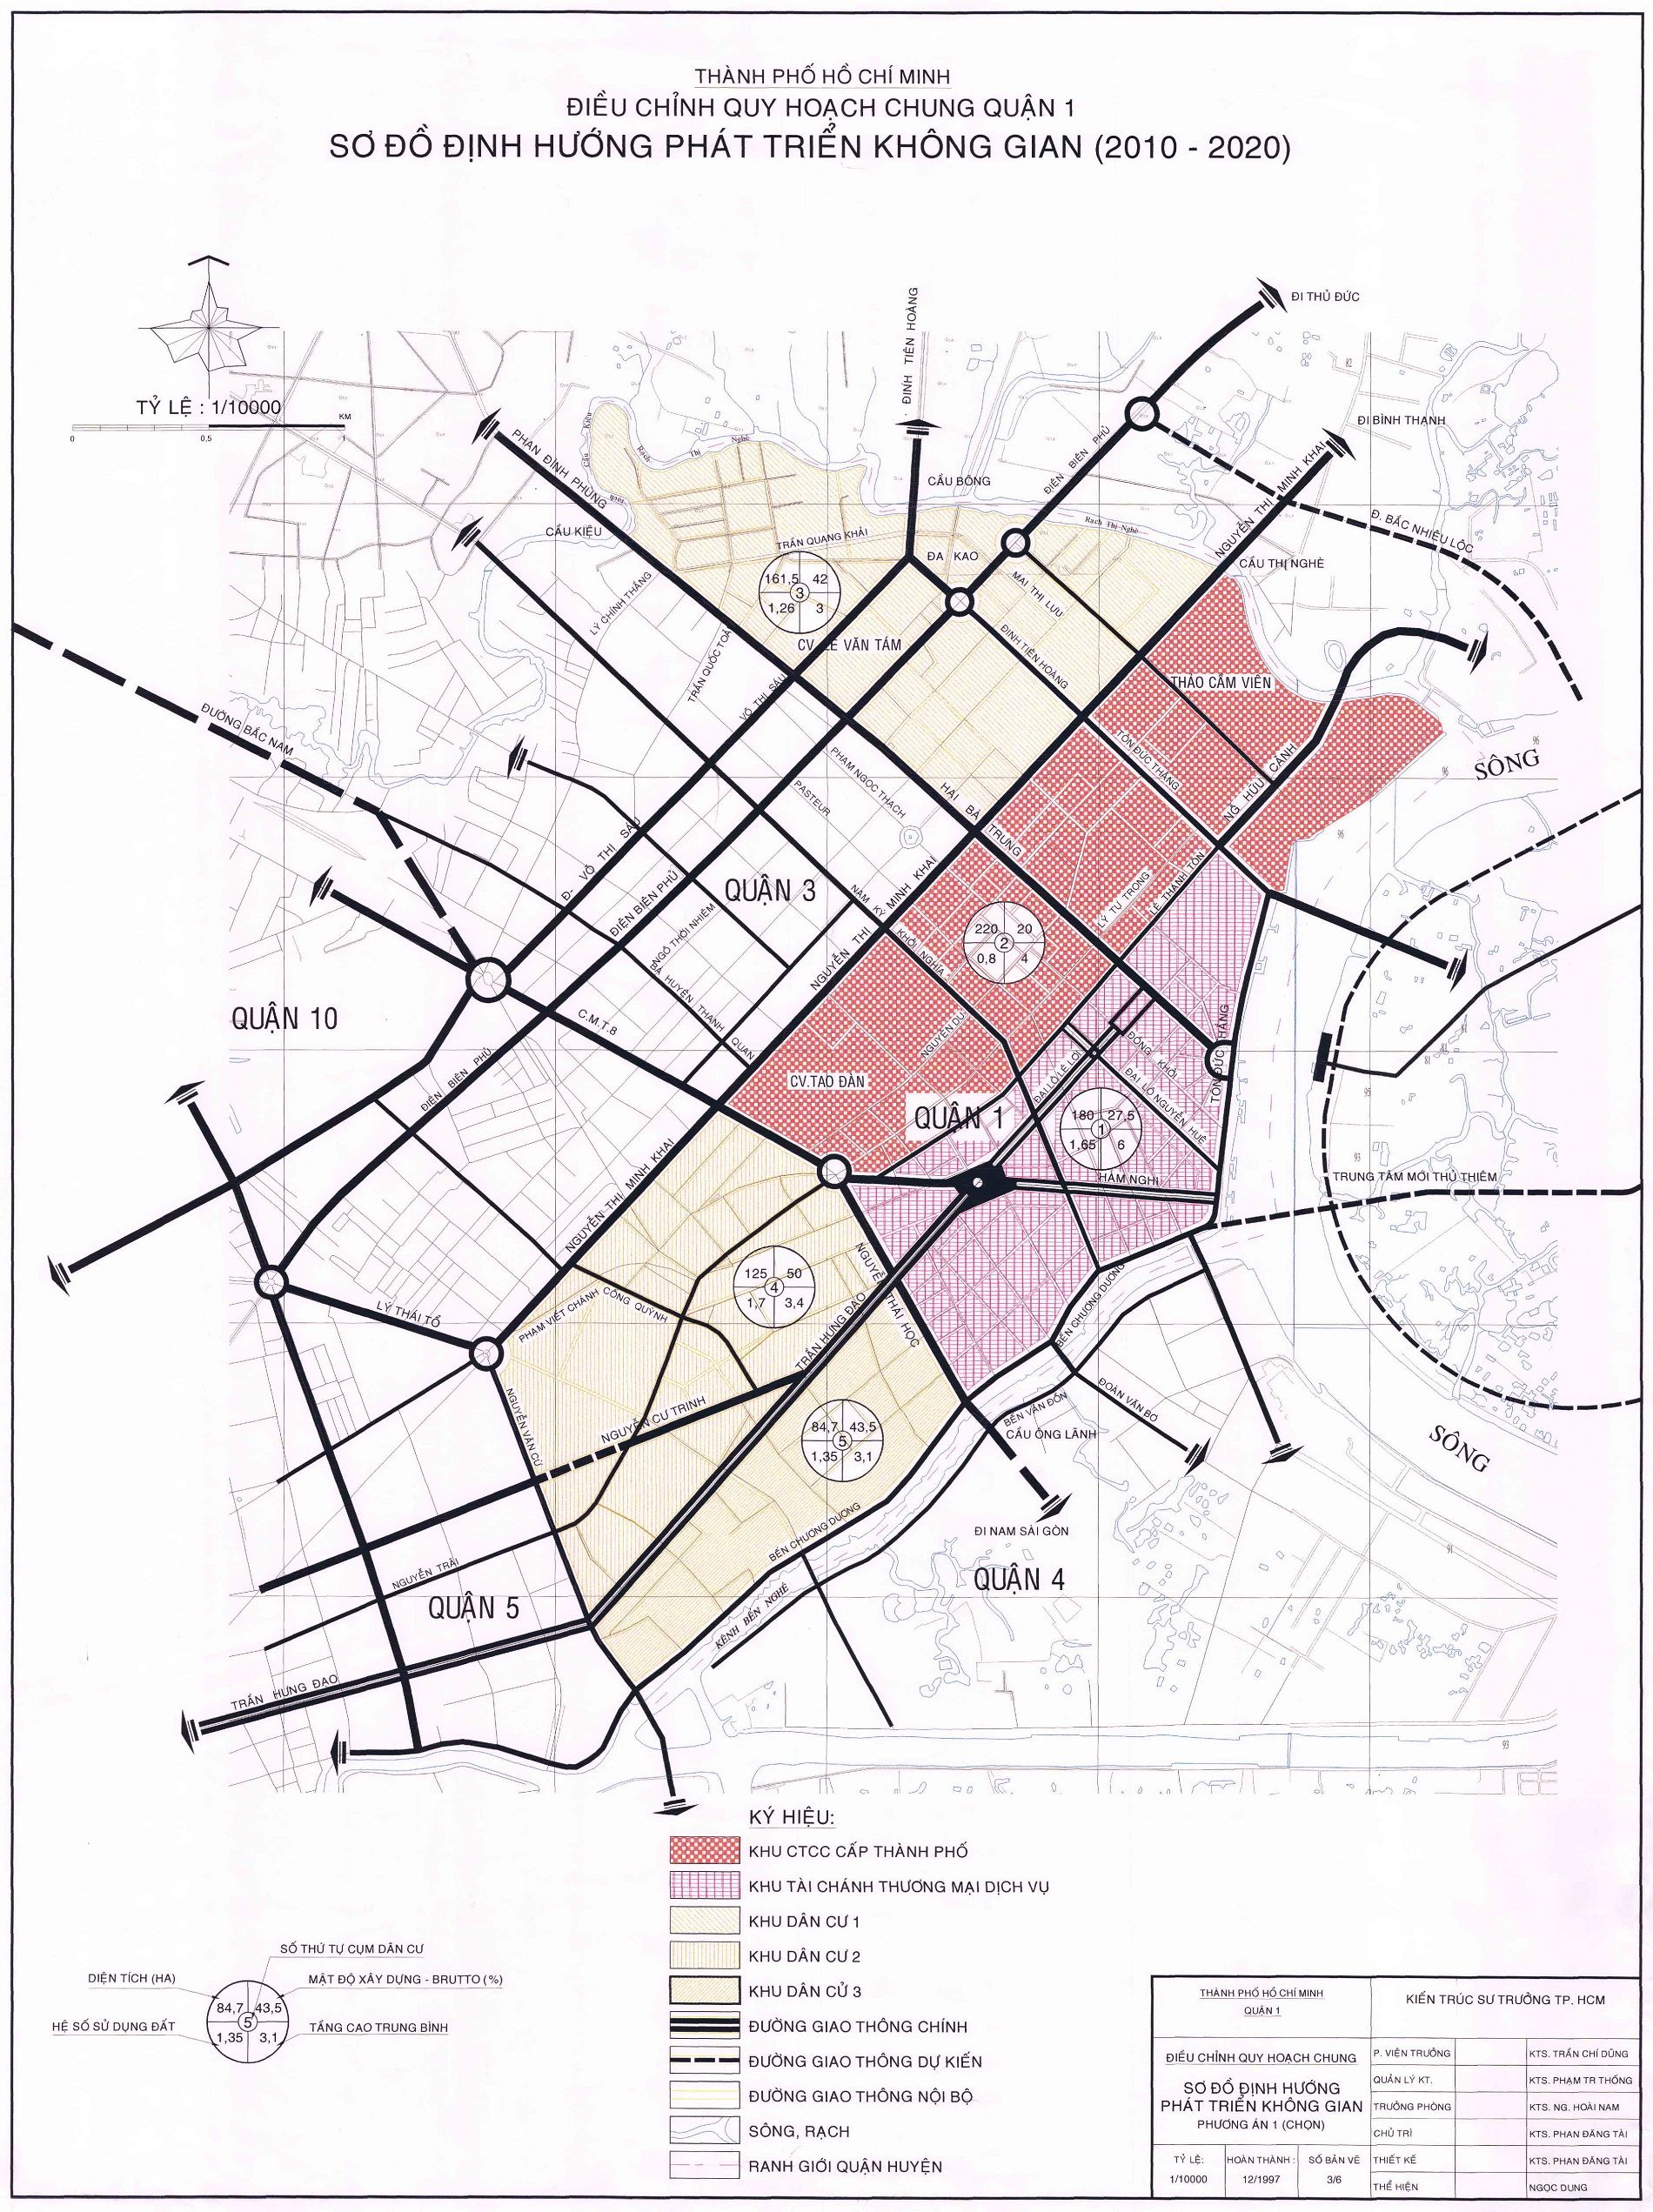 Xem bản đồ quy hoạch quận 1 đến năm 2020 chi tiết